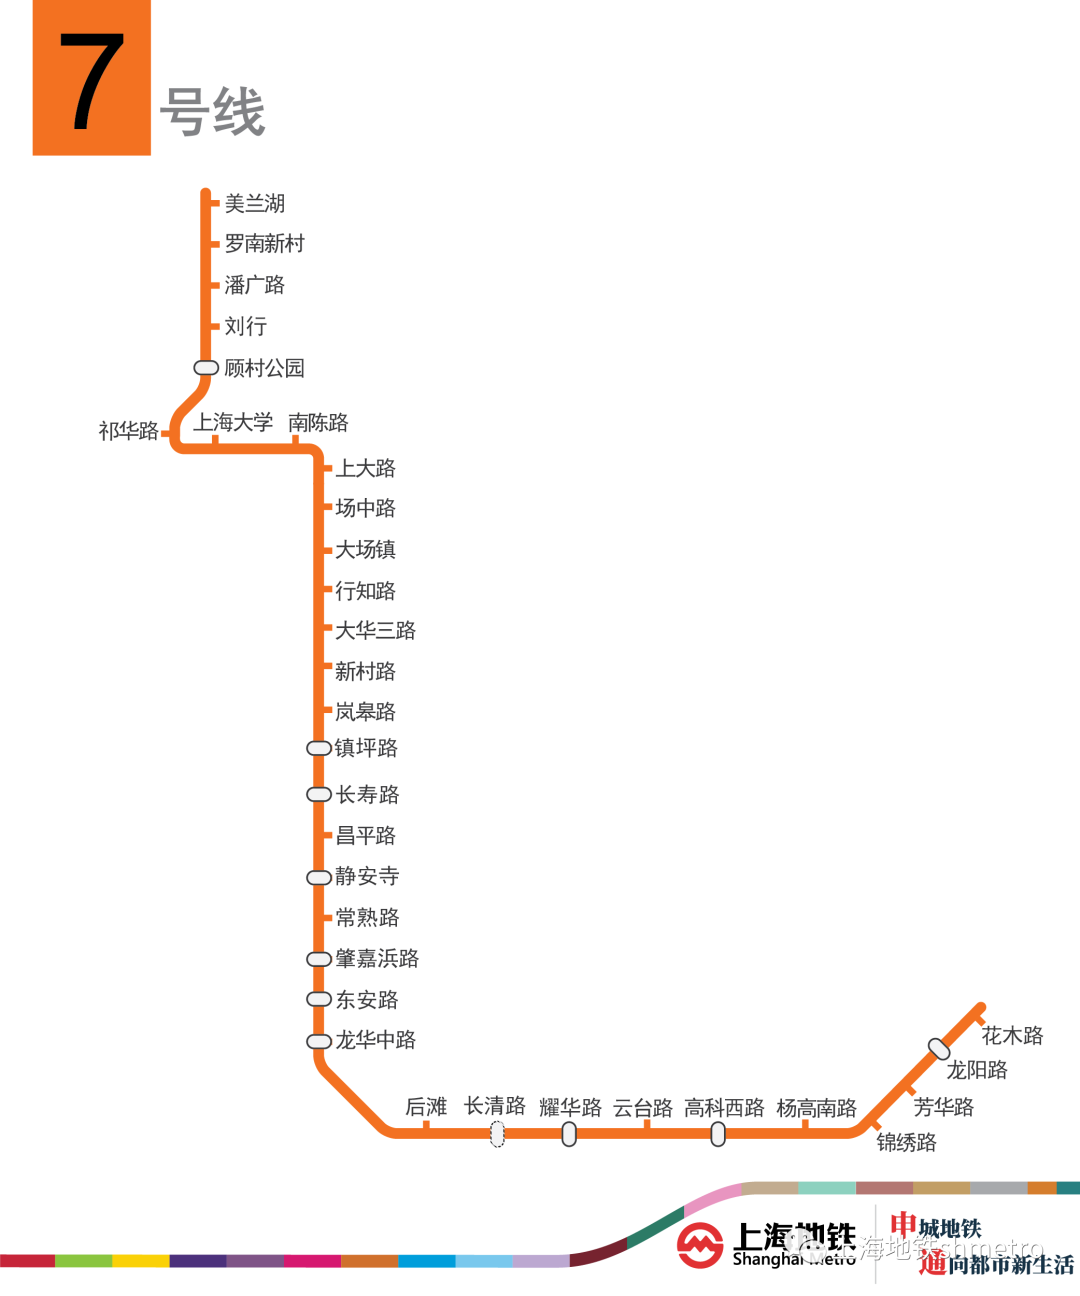 上海地铁线路图 地铁线路图